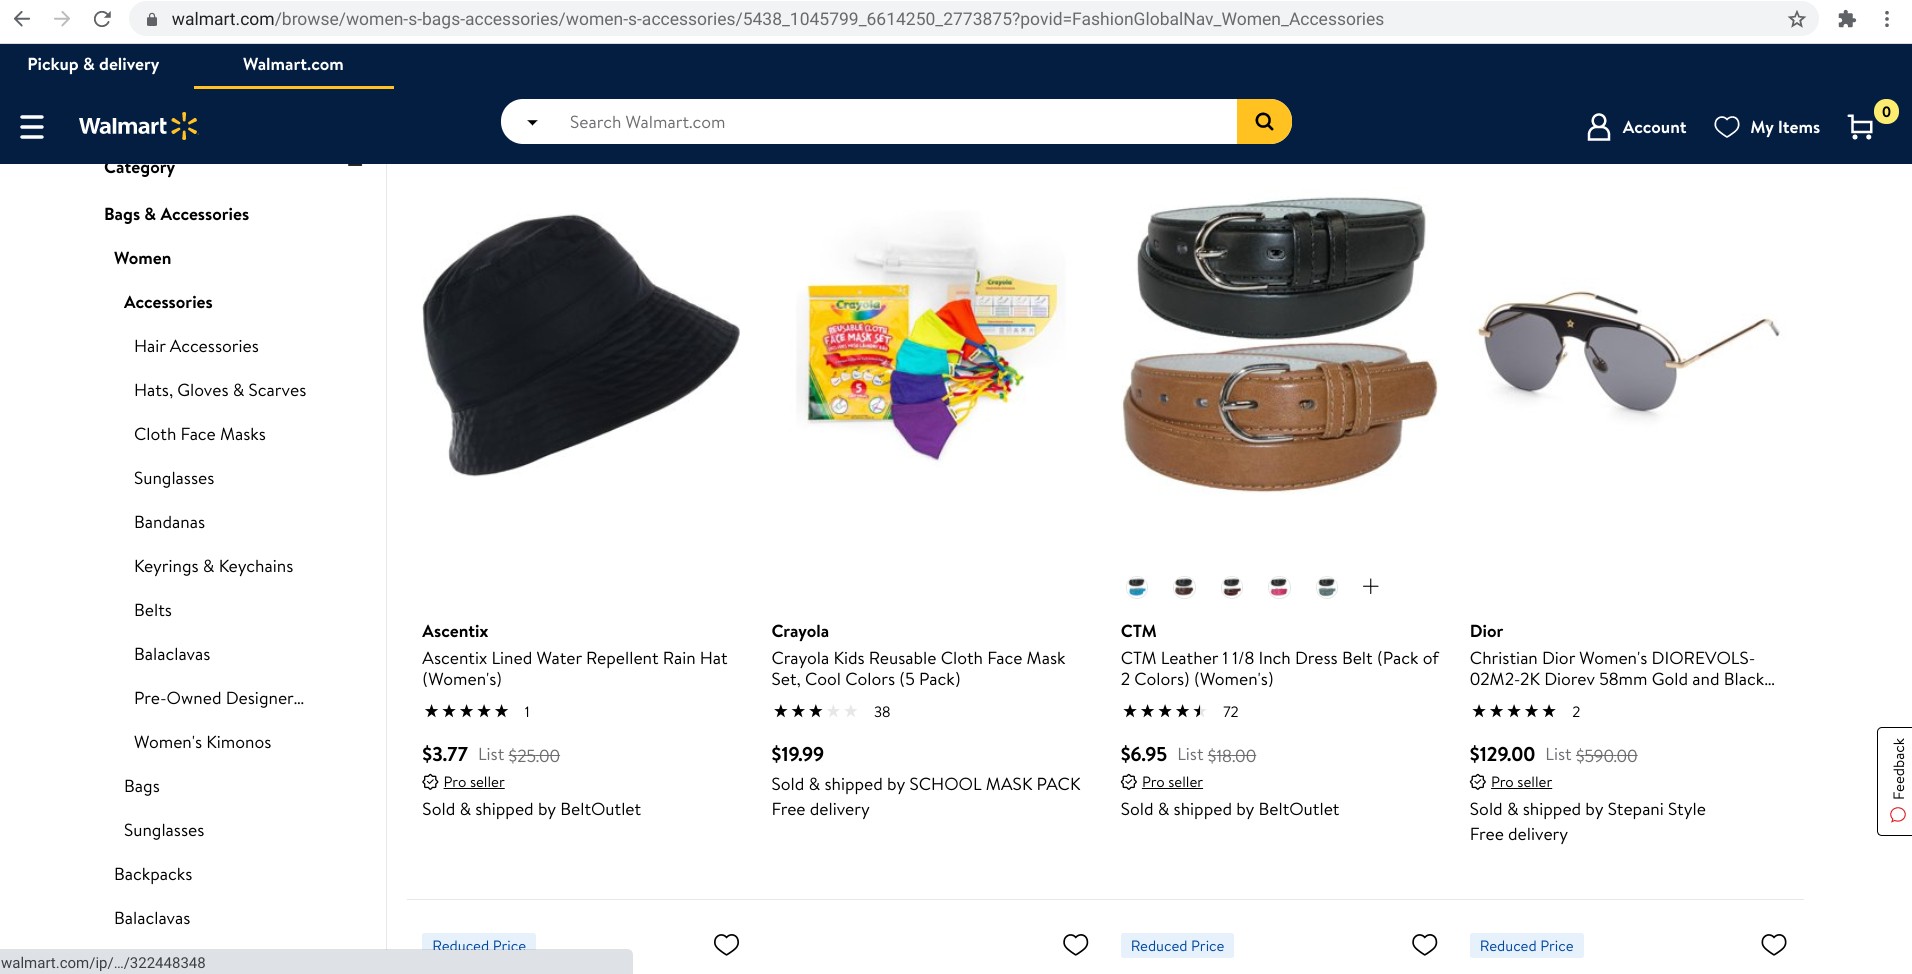 Screenshot von Produkten auf Walmart.com, die von Drittanbieter:innen angeboten werden.